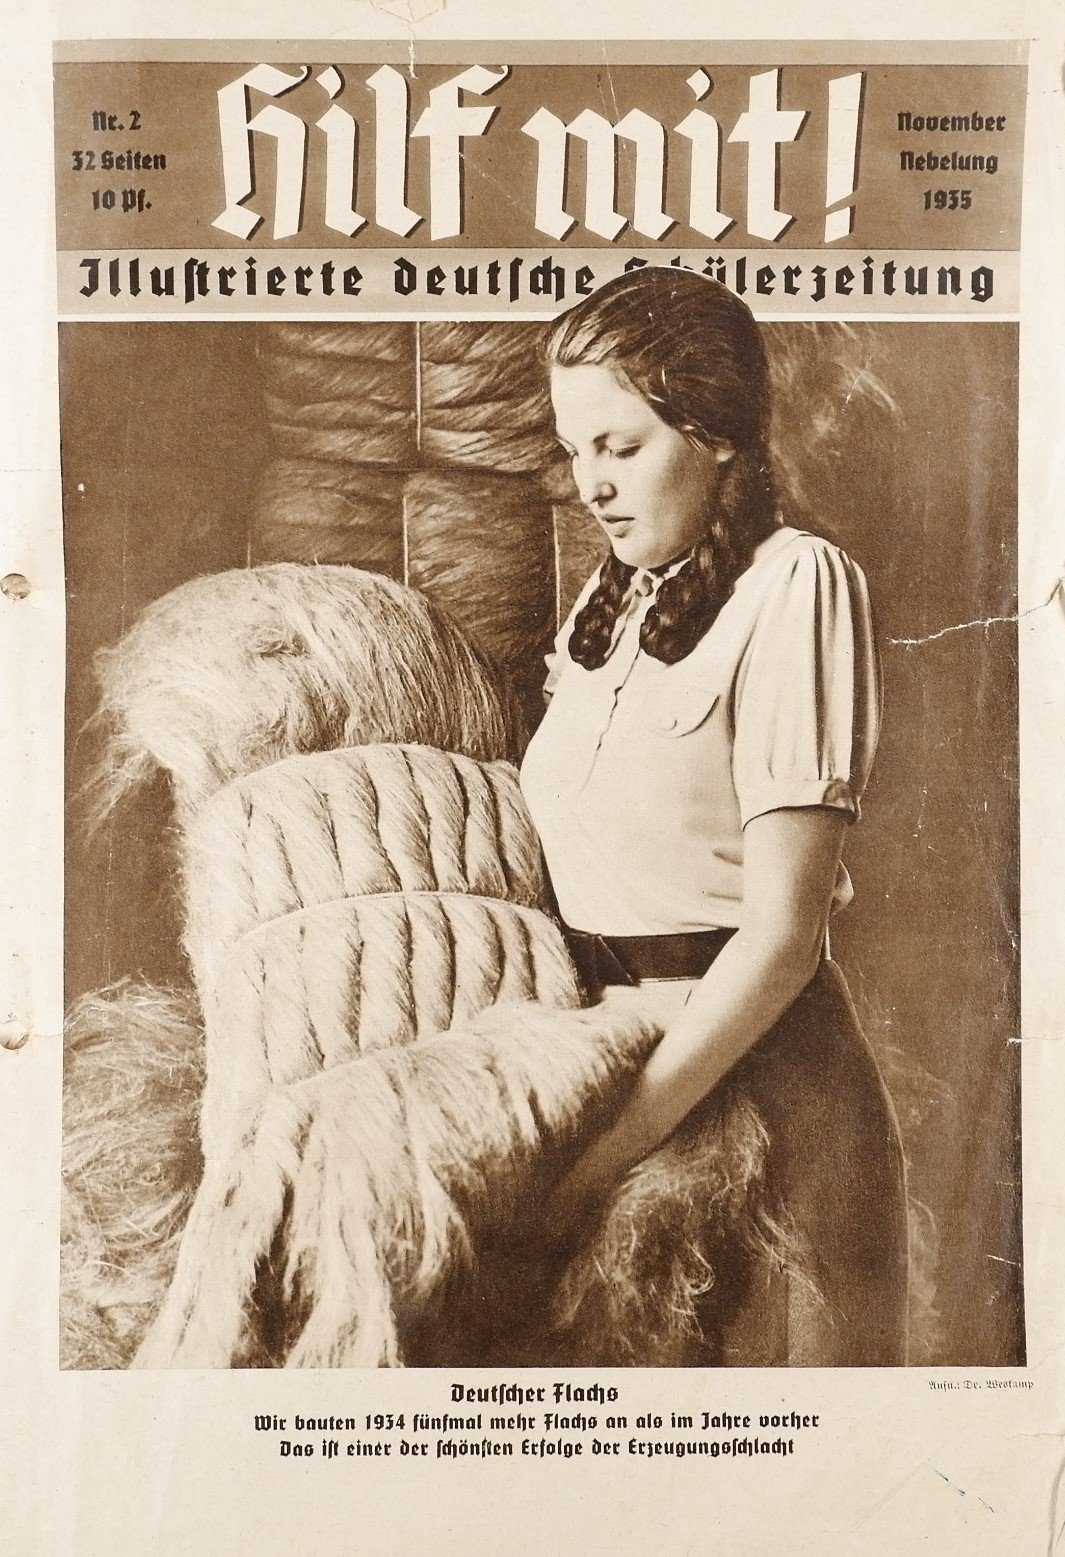 Hilf mit! - Illustrierte deutsche Schülerzeitung 2/1935 (Volkskunde- und Freilichtmuseum Roscheider Hof RR-F)